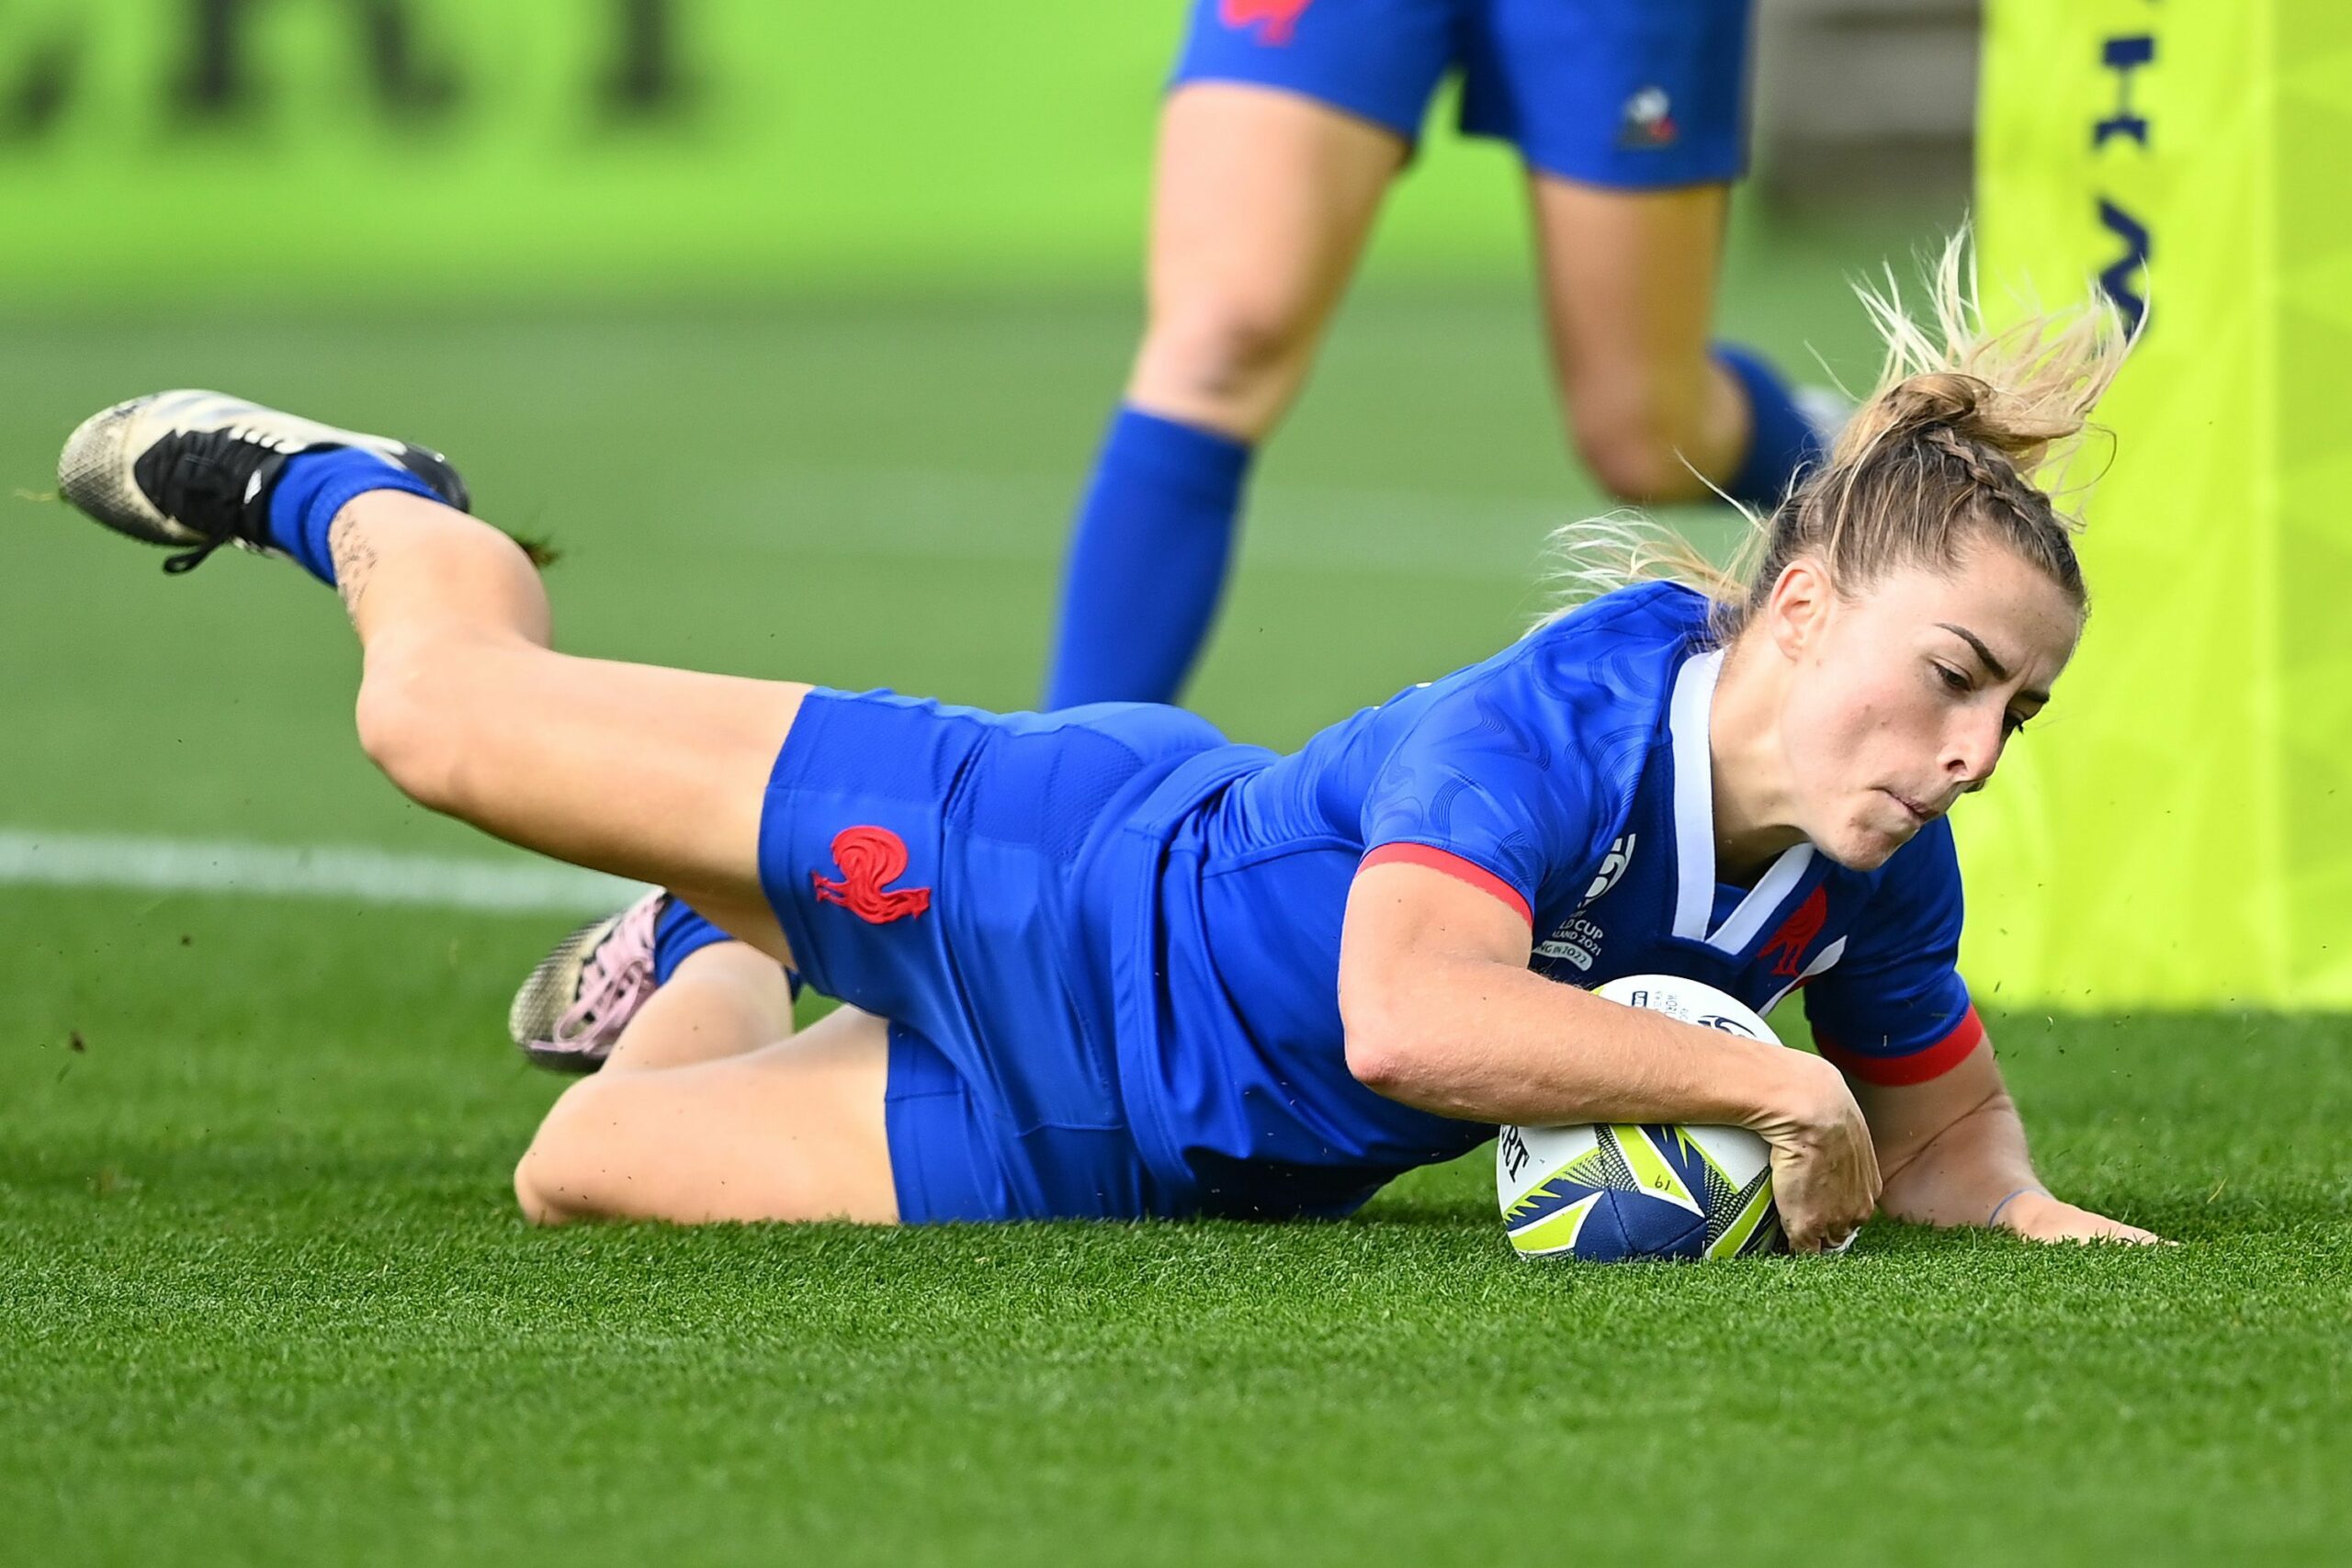 Coppa del Mondo femminile: l'Italia regge un'ora, poi la Francia dilaga e passa 39-3